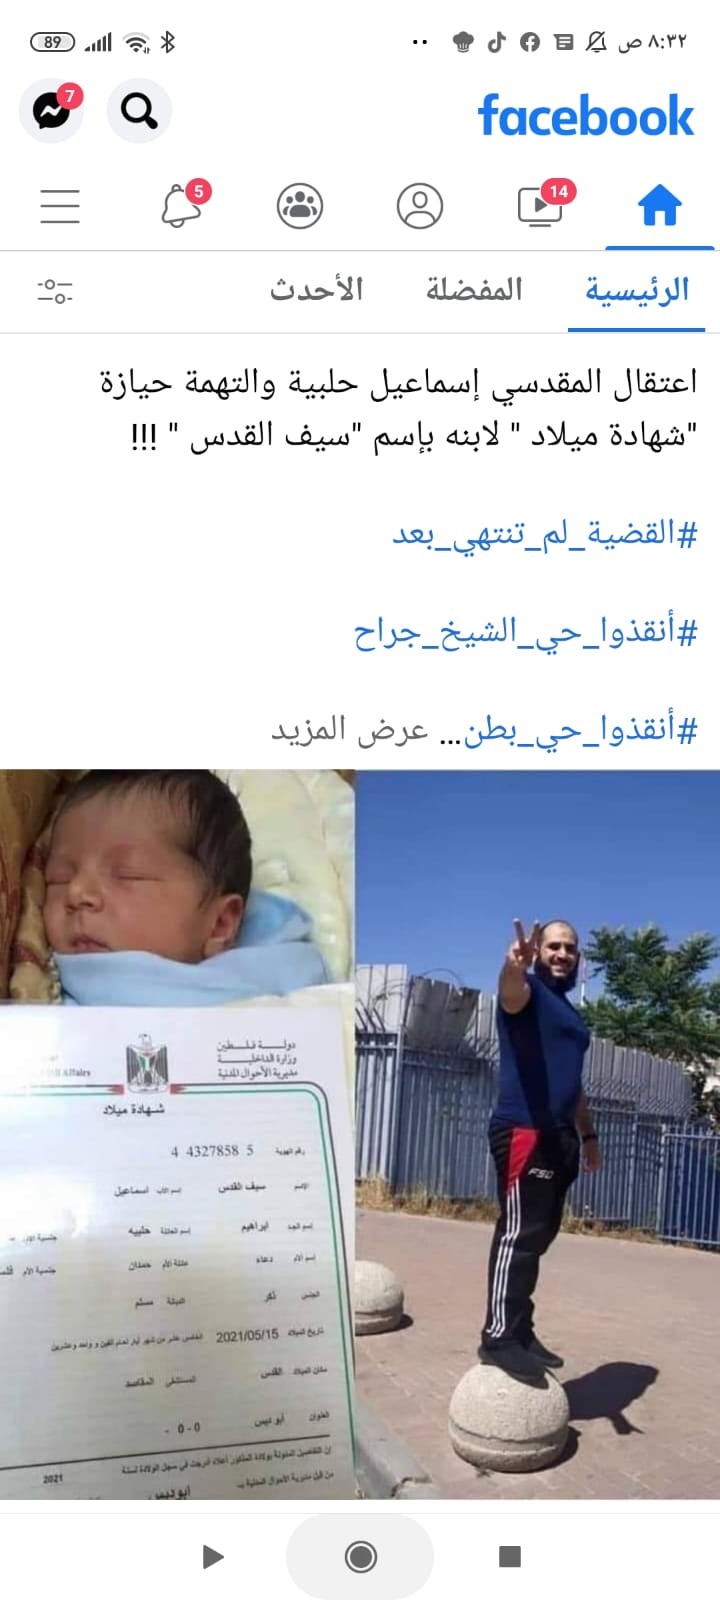 اعتقال المقدسي إسماعيل حلبية لحيازه على شهادة ميلاد لابنه باسم "سيف القدس"